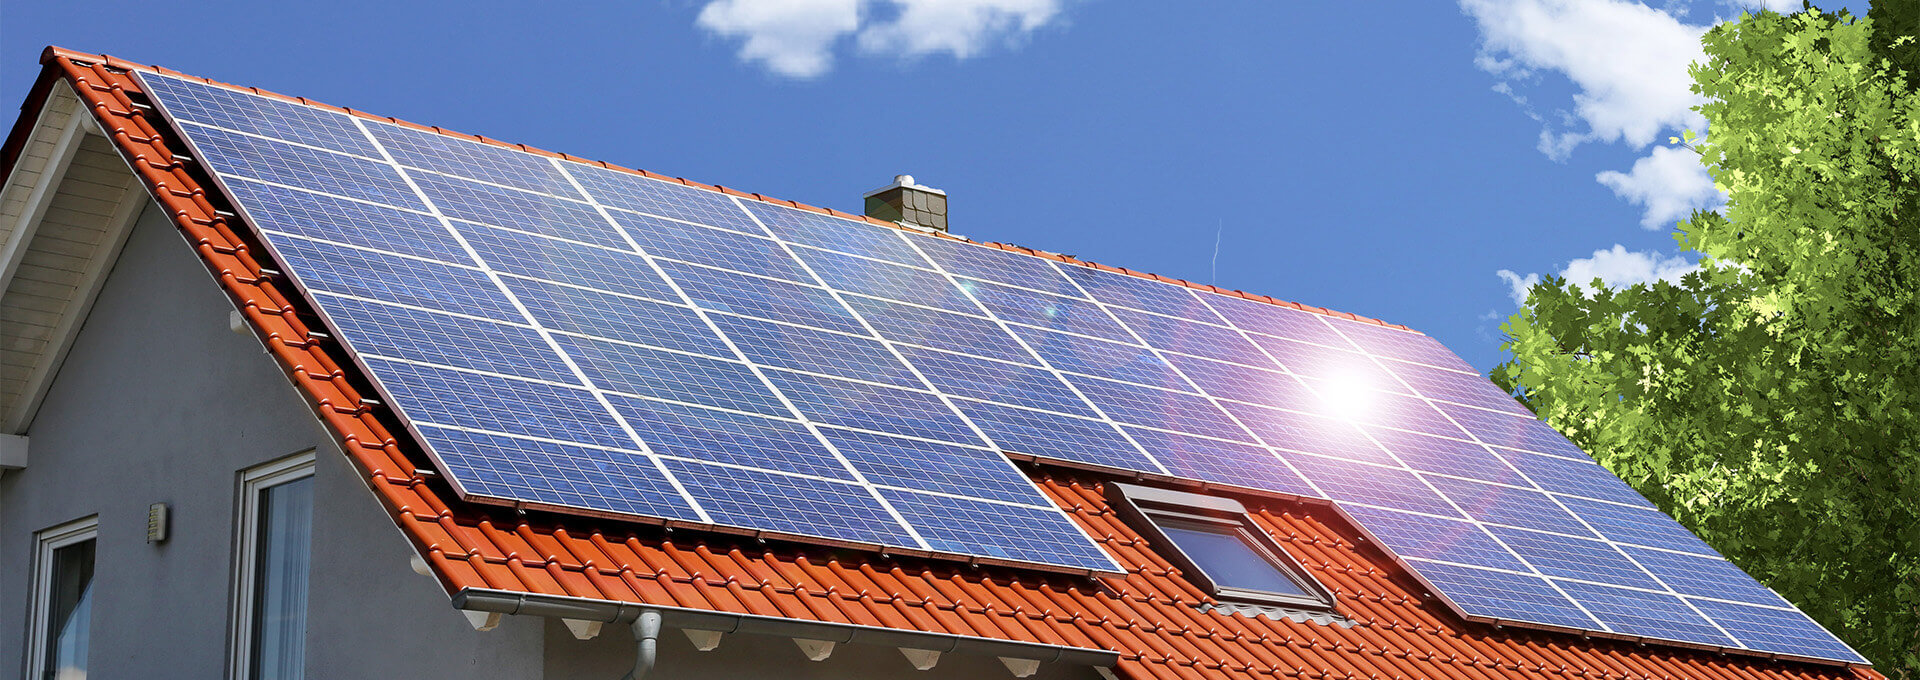 Photovoltaik-Anlage auf einem Hausdach an einem sonnigem Tag